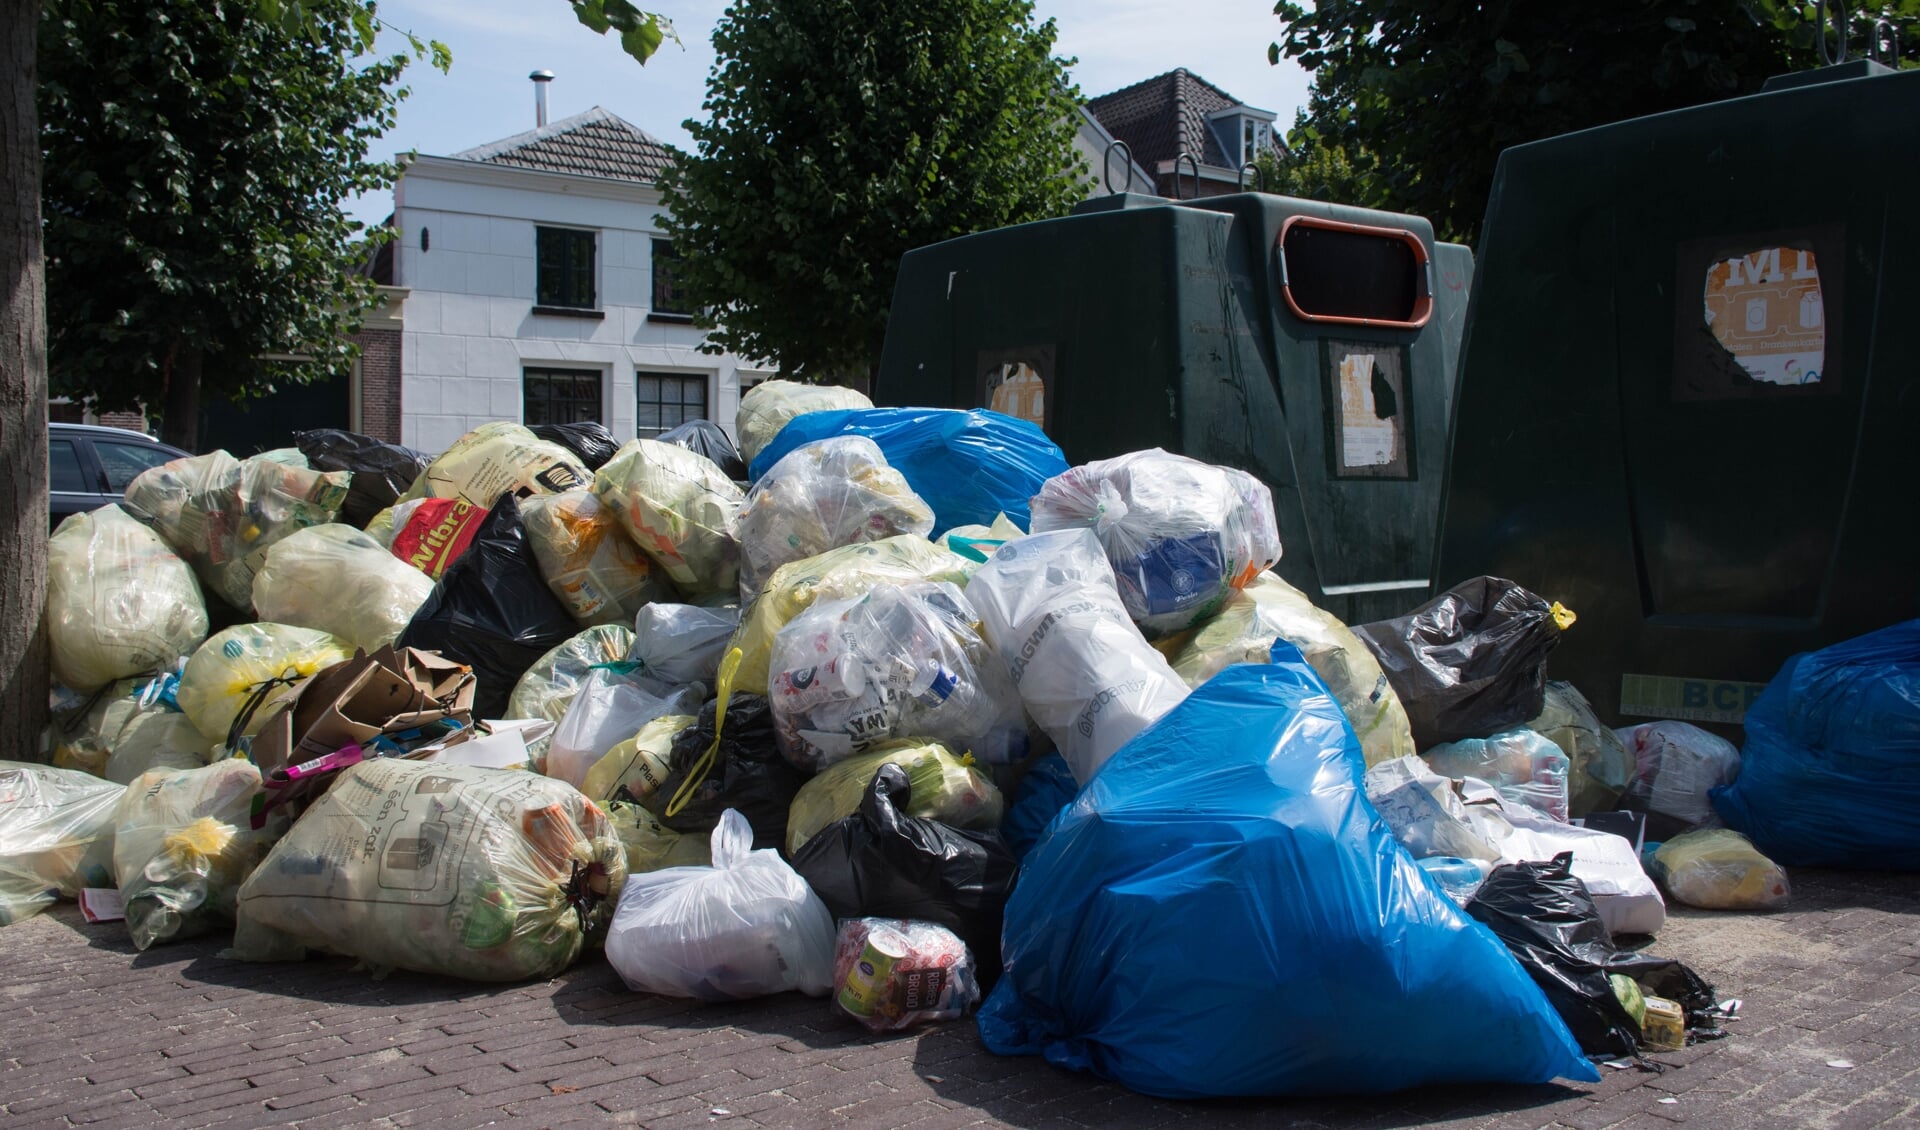 Bergen afval in Weesp.